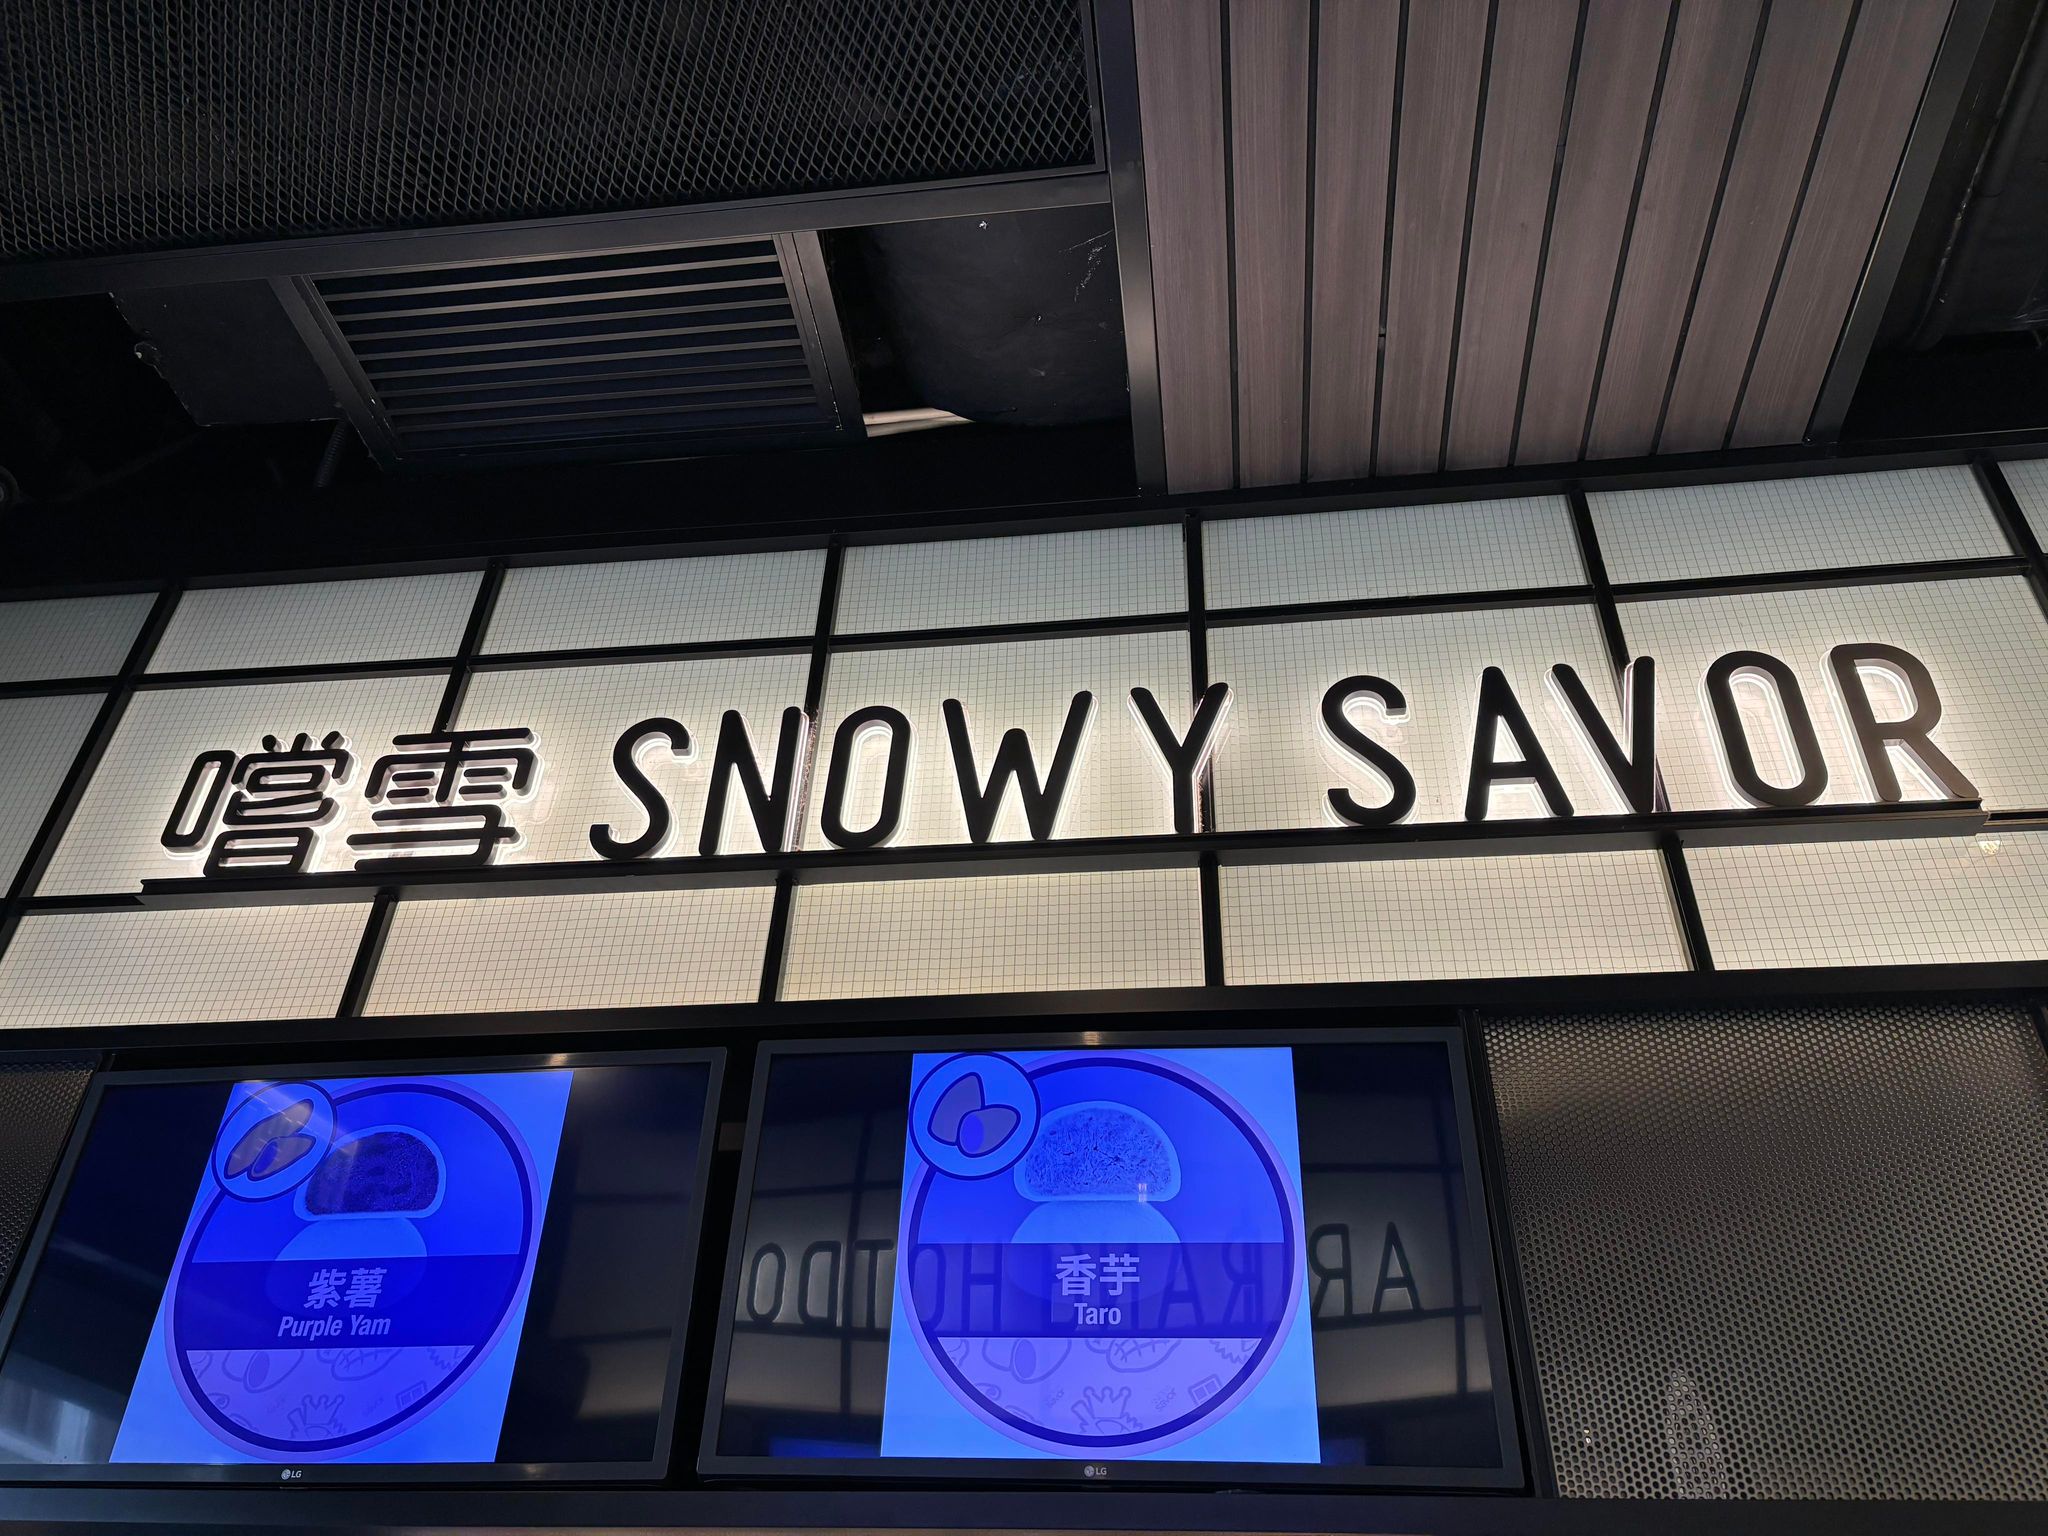 查看更多糖水店: 嚐雪 (亨環‧天后) Snowy Savor (Park Aura)[天后]